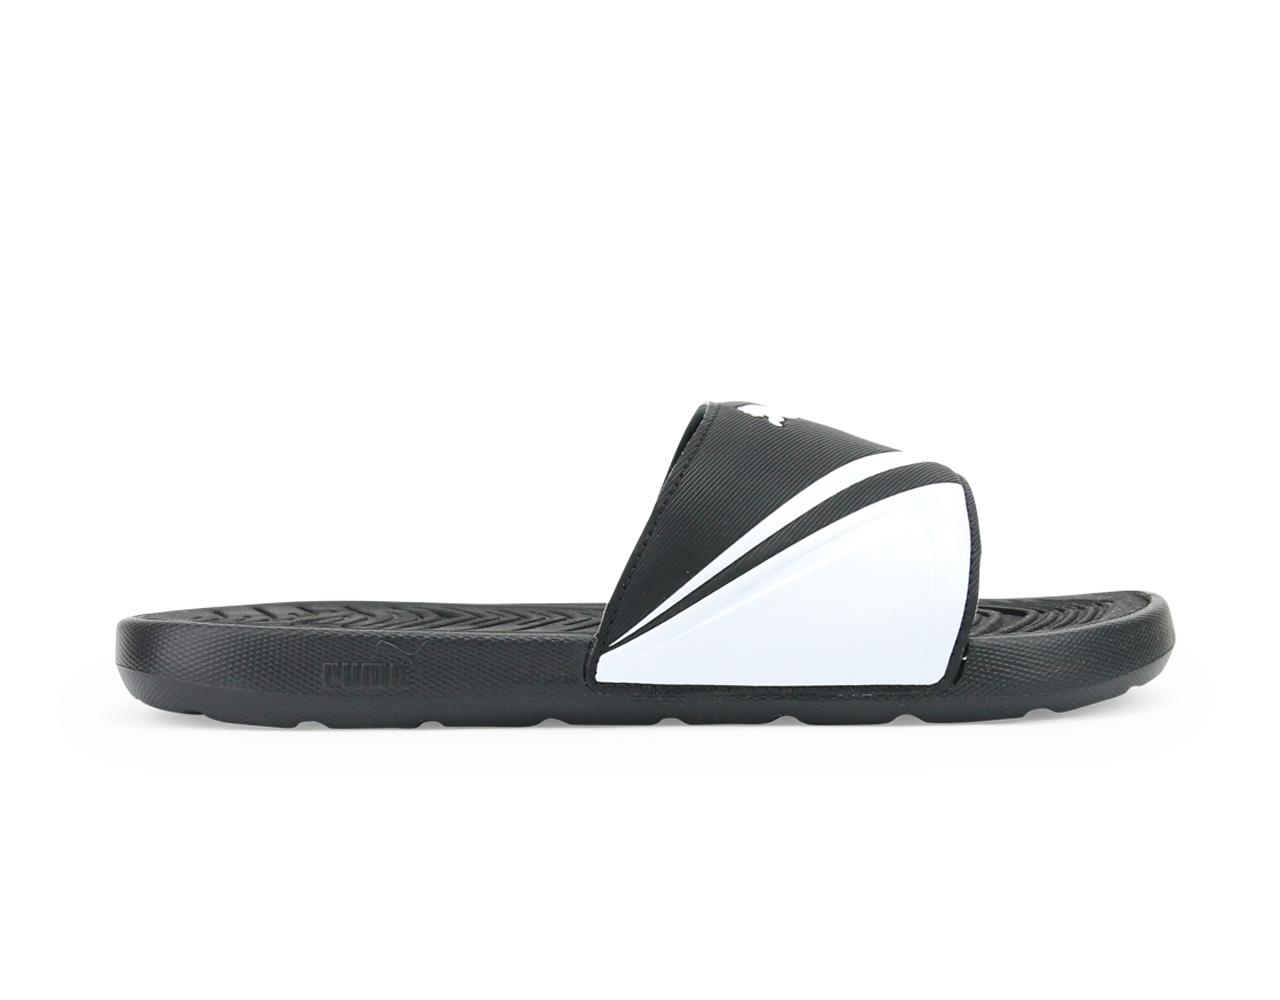 PUMA Men's StarCat Pro Sandals White/Black